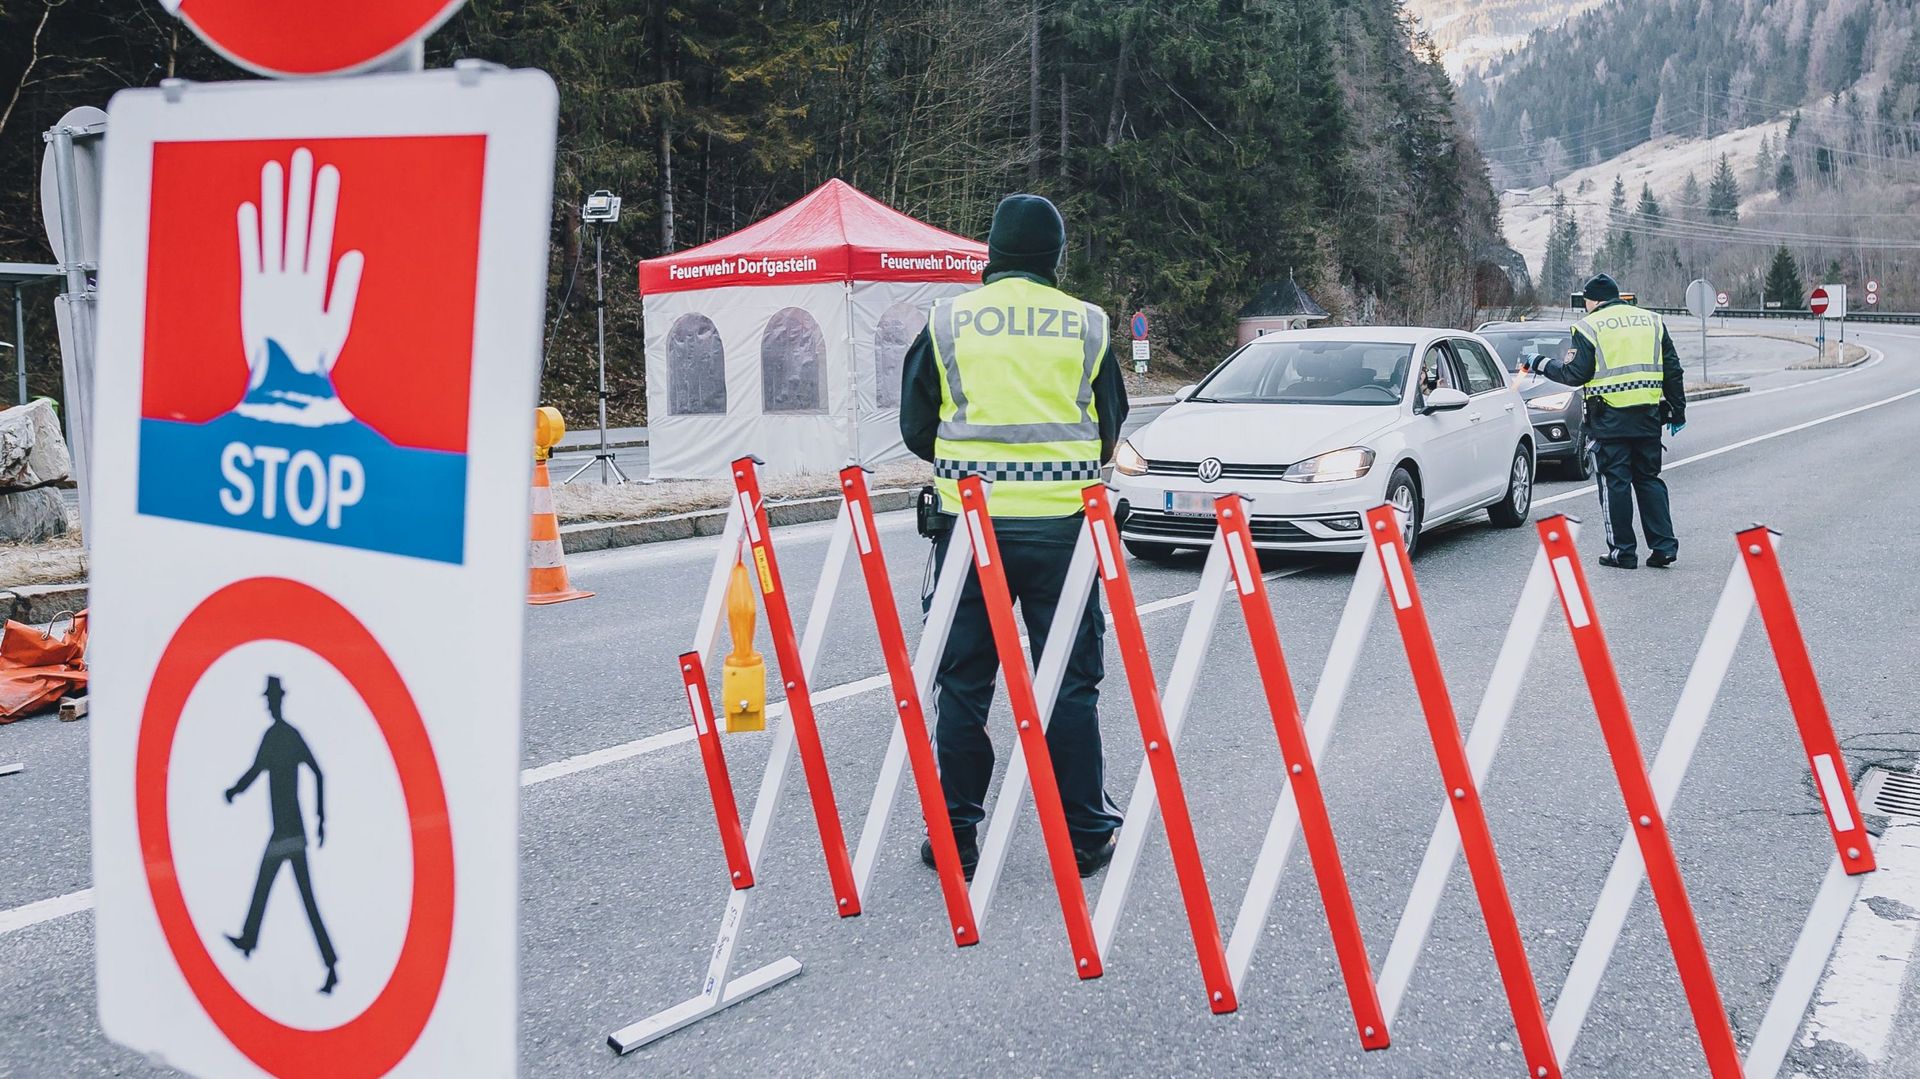 La police au point de contrôle de la barrière de la vallée de Gastein à Dorfgastein en Autriche. Dans la province de Salzbourg, deux vallées entières et la communauté de Flachau ont été mises en quarantaine à cause du coronavirus.